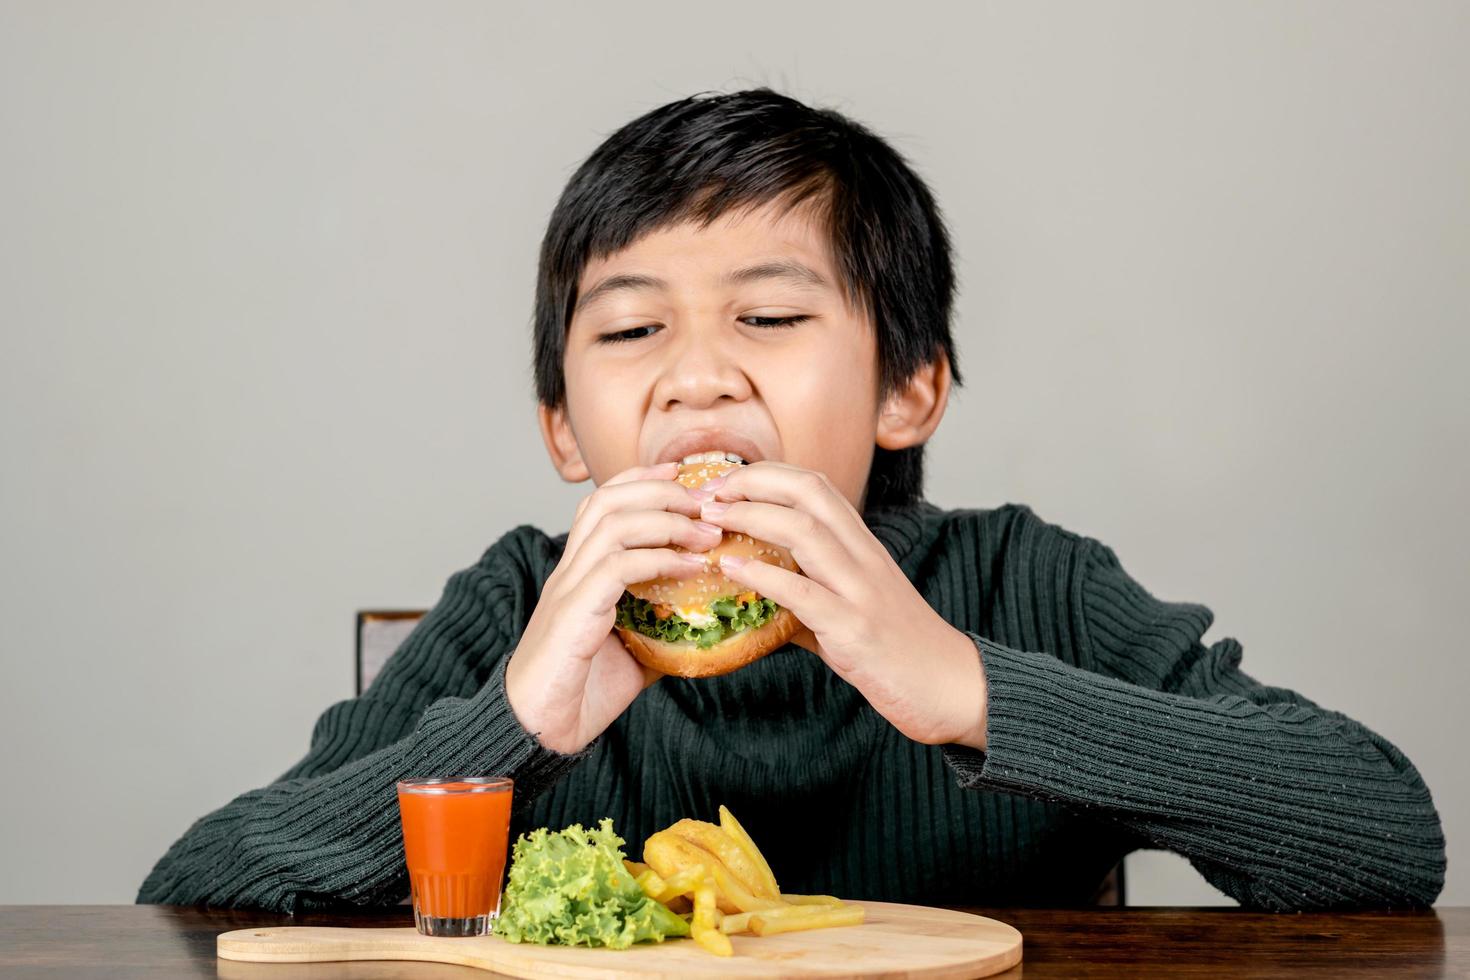 söt asiatisk pojke som äter en utsökt hamburgare med lycka foto